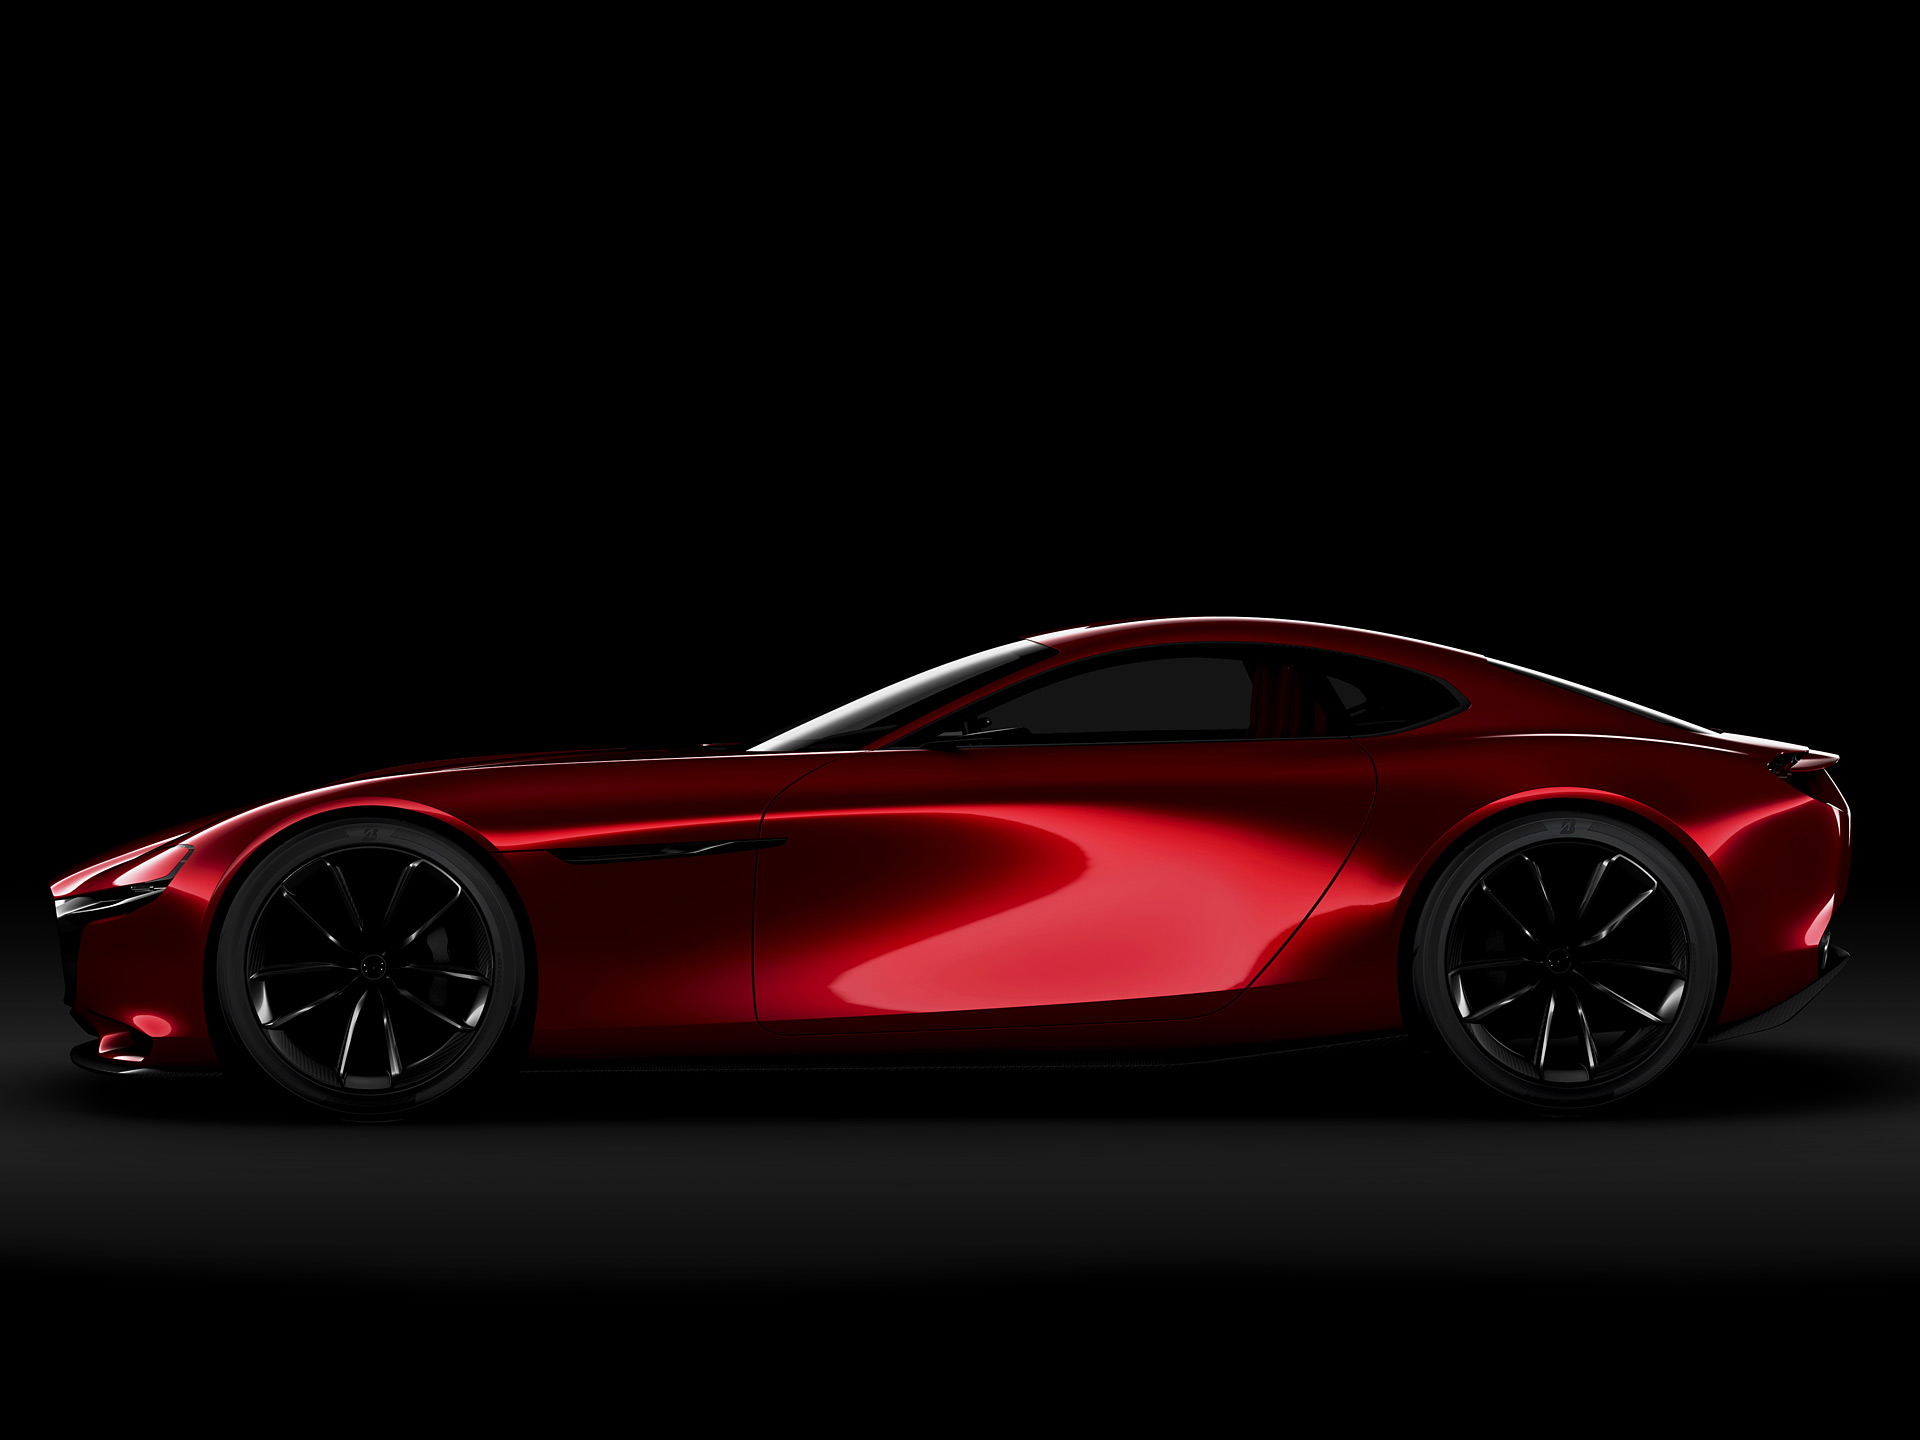  2015 Mazda RX-Vision Concept Wallpaper.